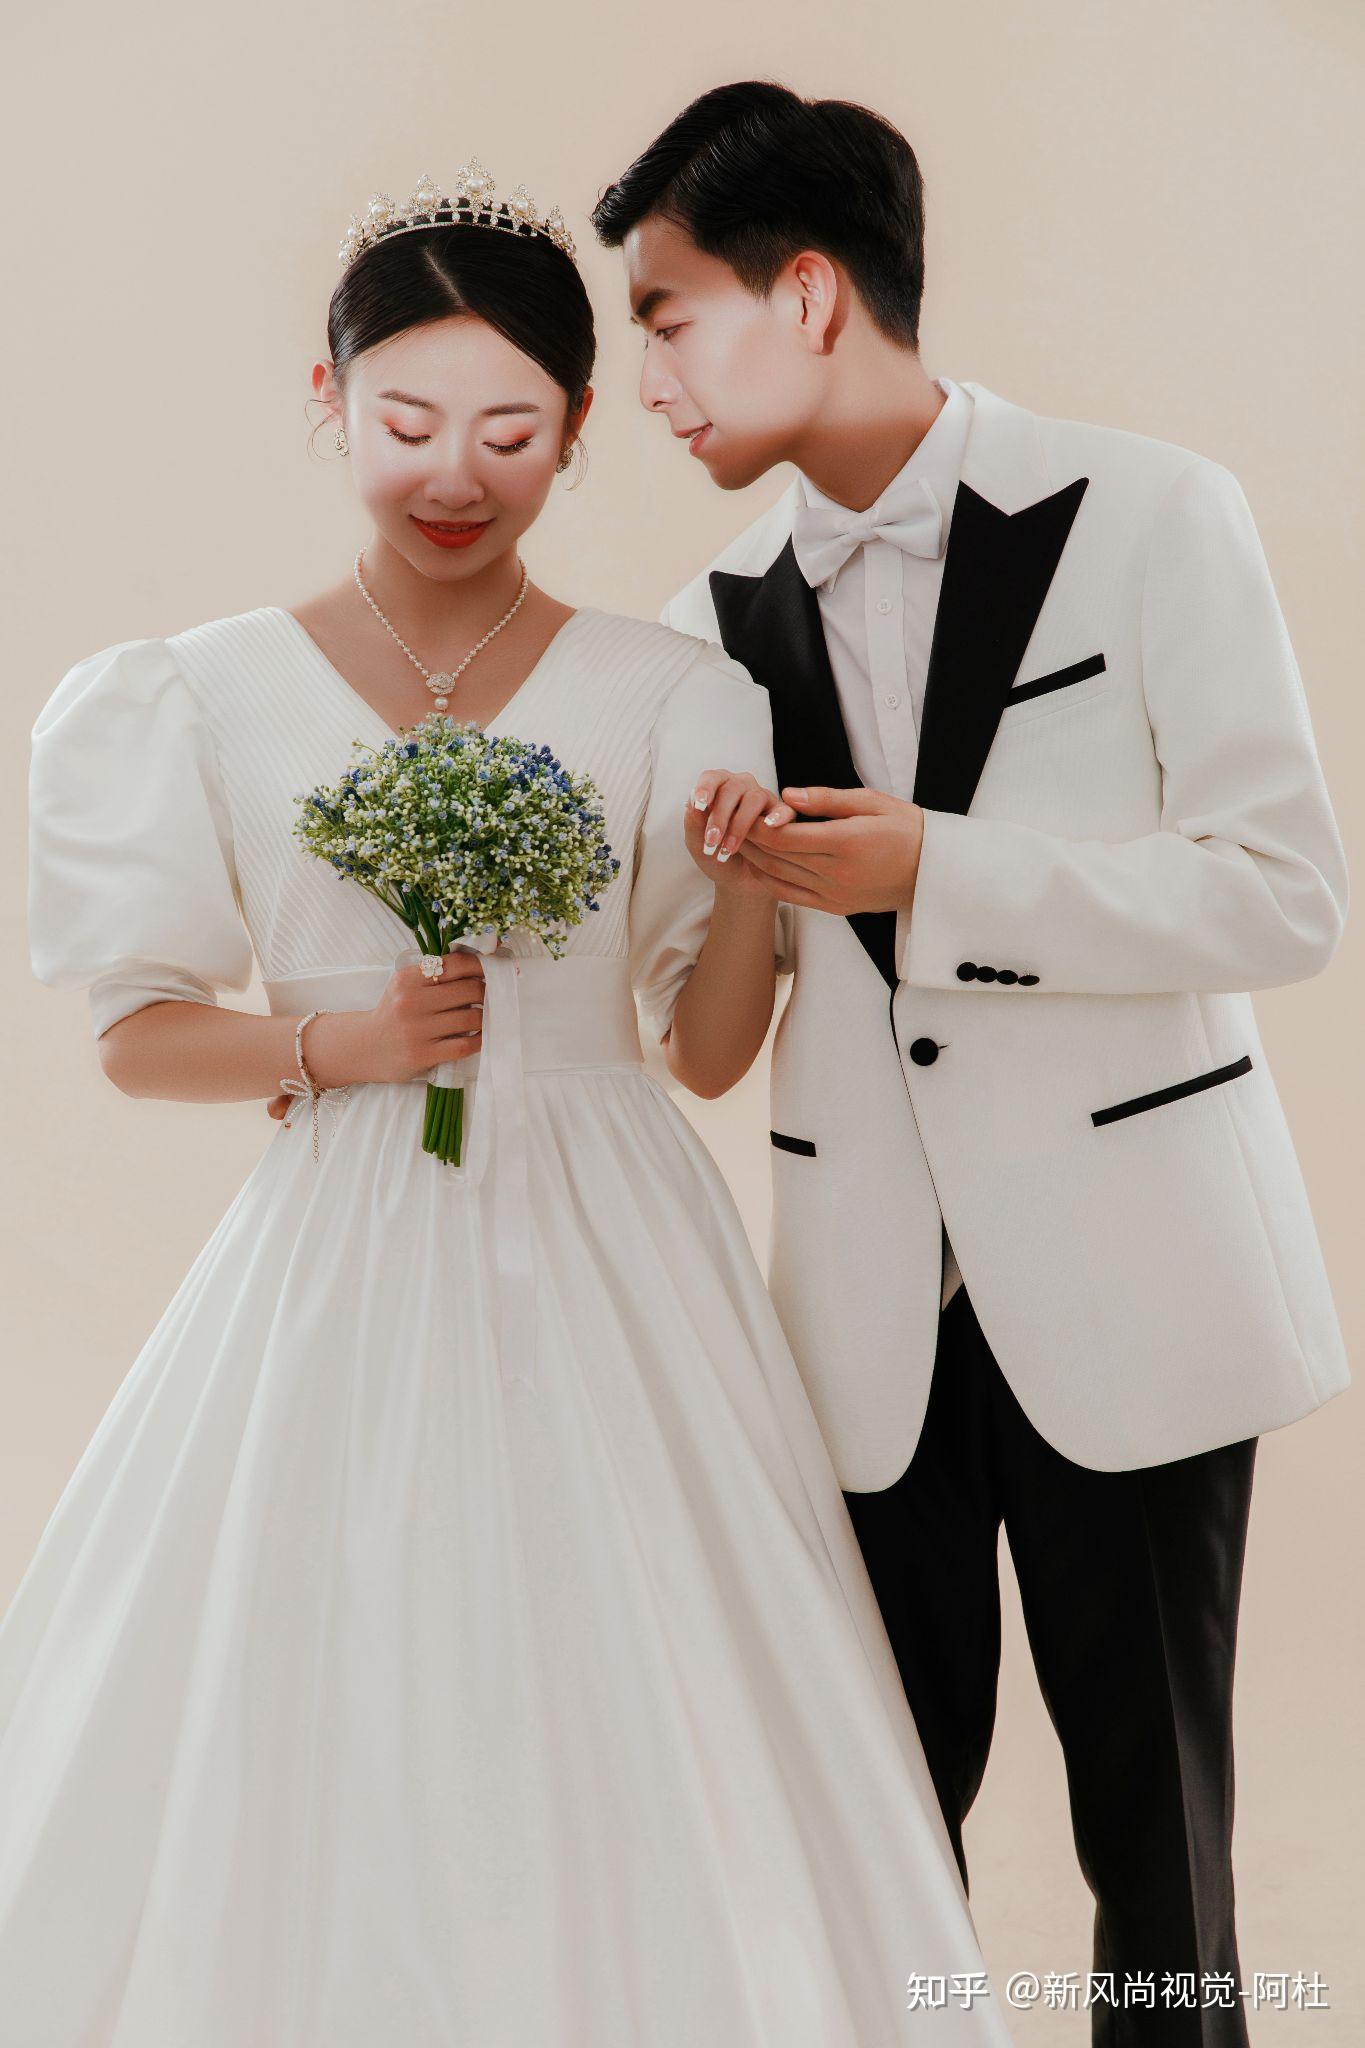 韩式婚纱照拍摄都有哪些步骤特色？韩式婚纱照风格图片欣赏_99女性网